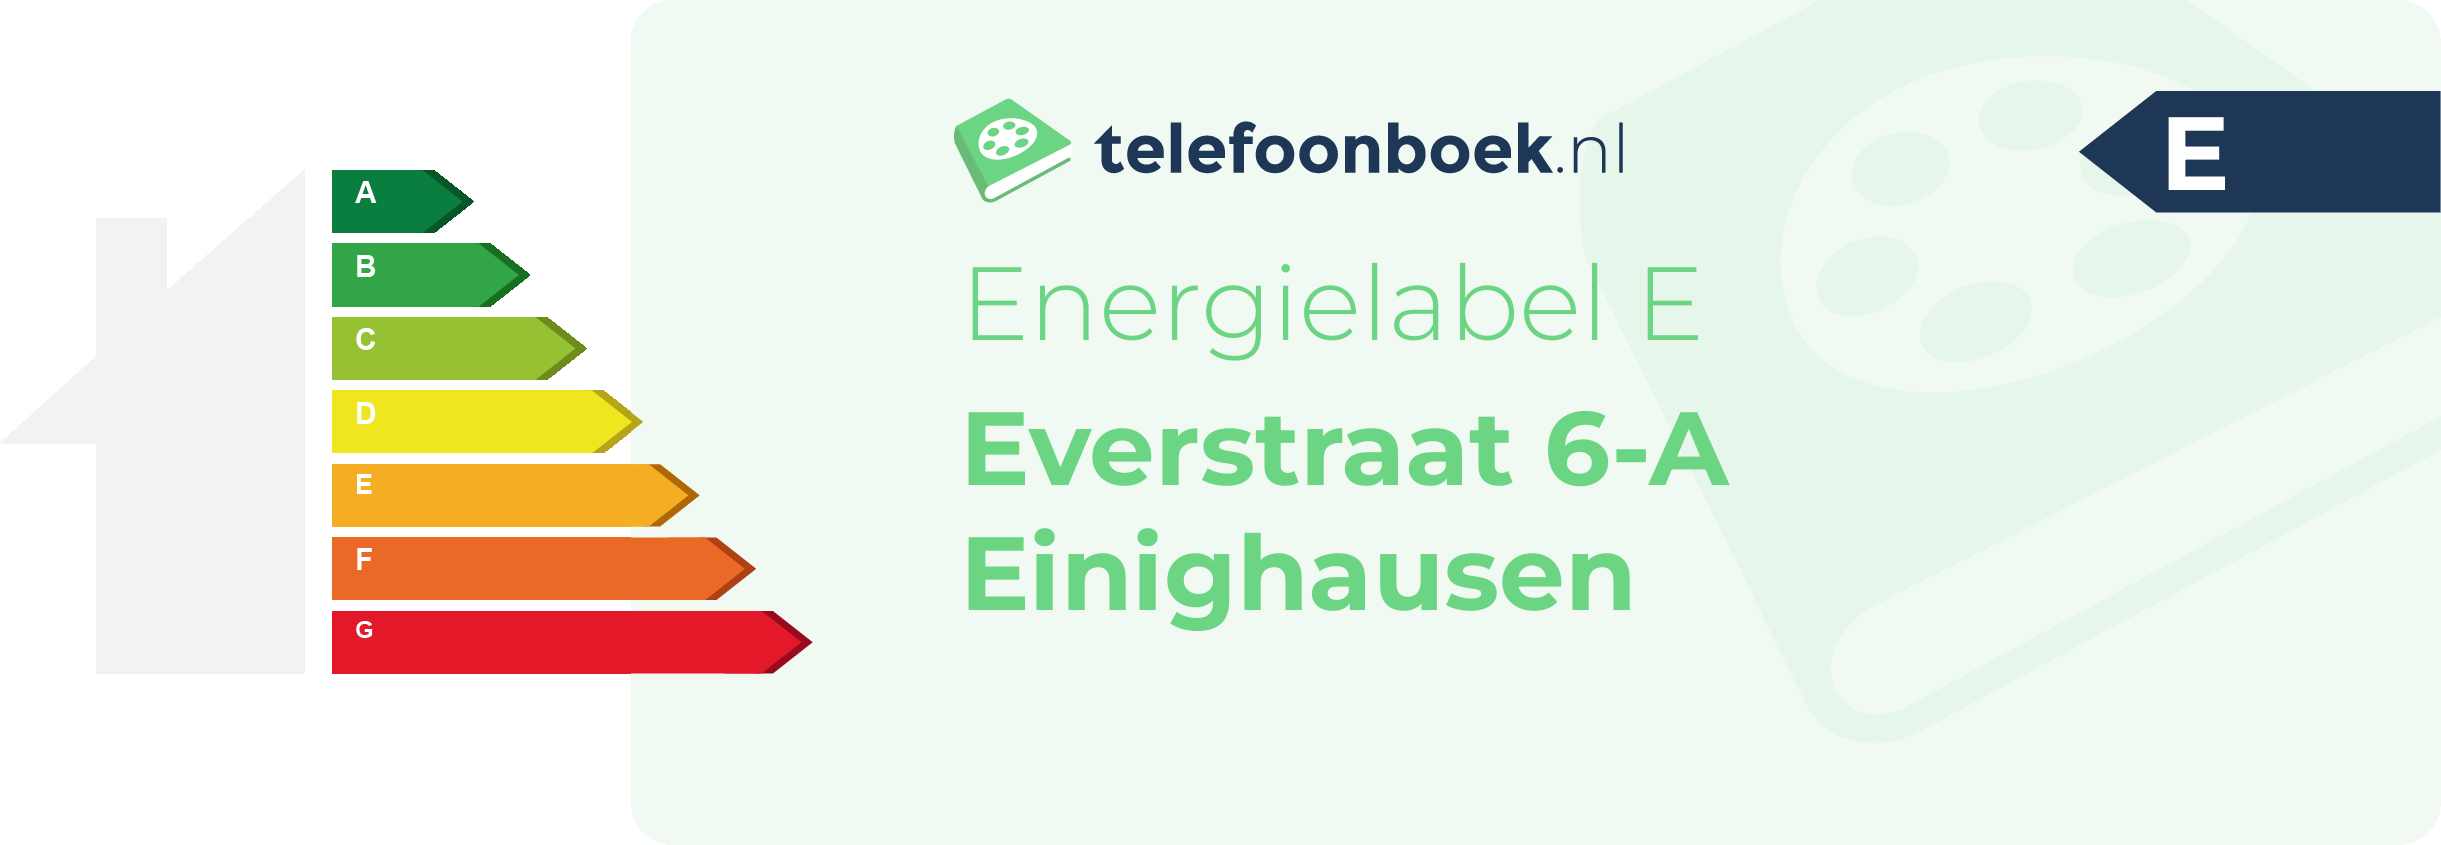 Energielabel Everstraat 6-A Einighausen